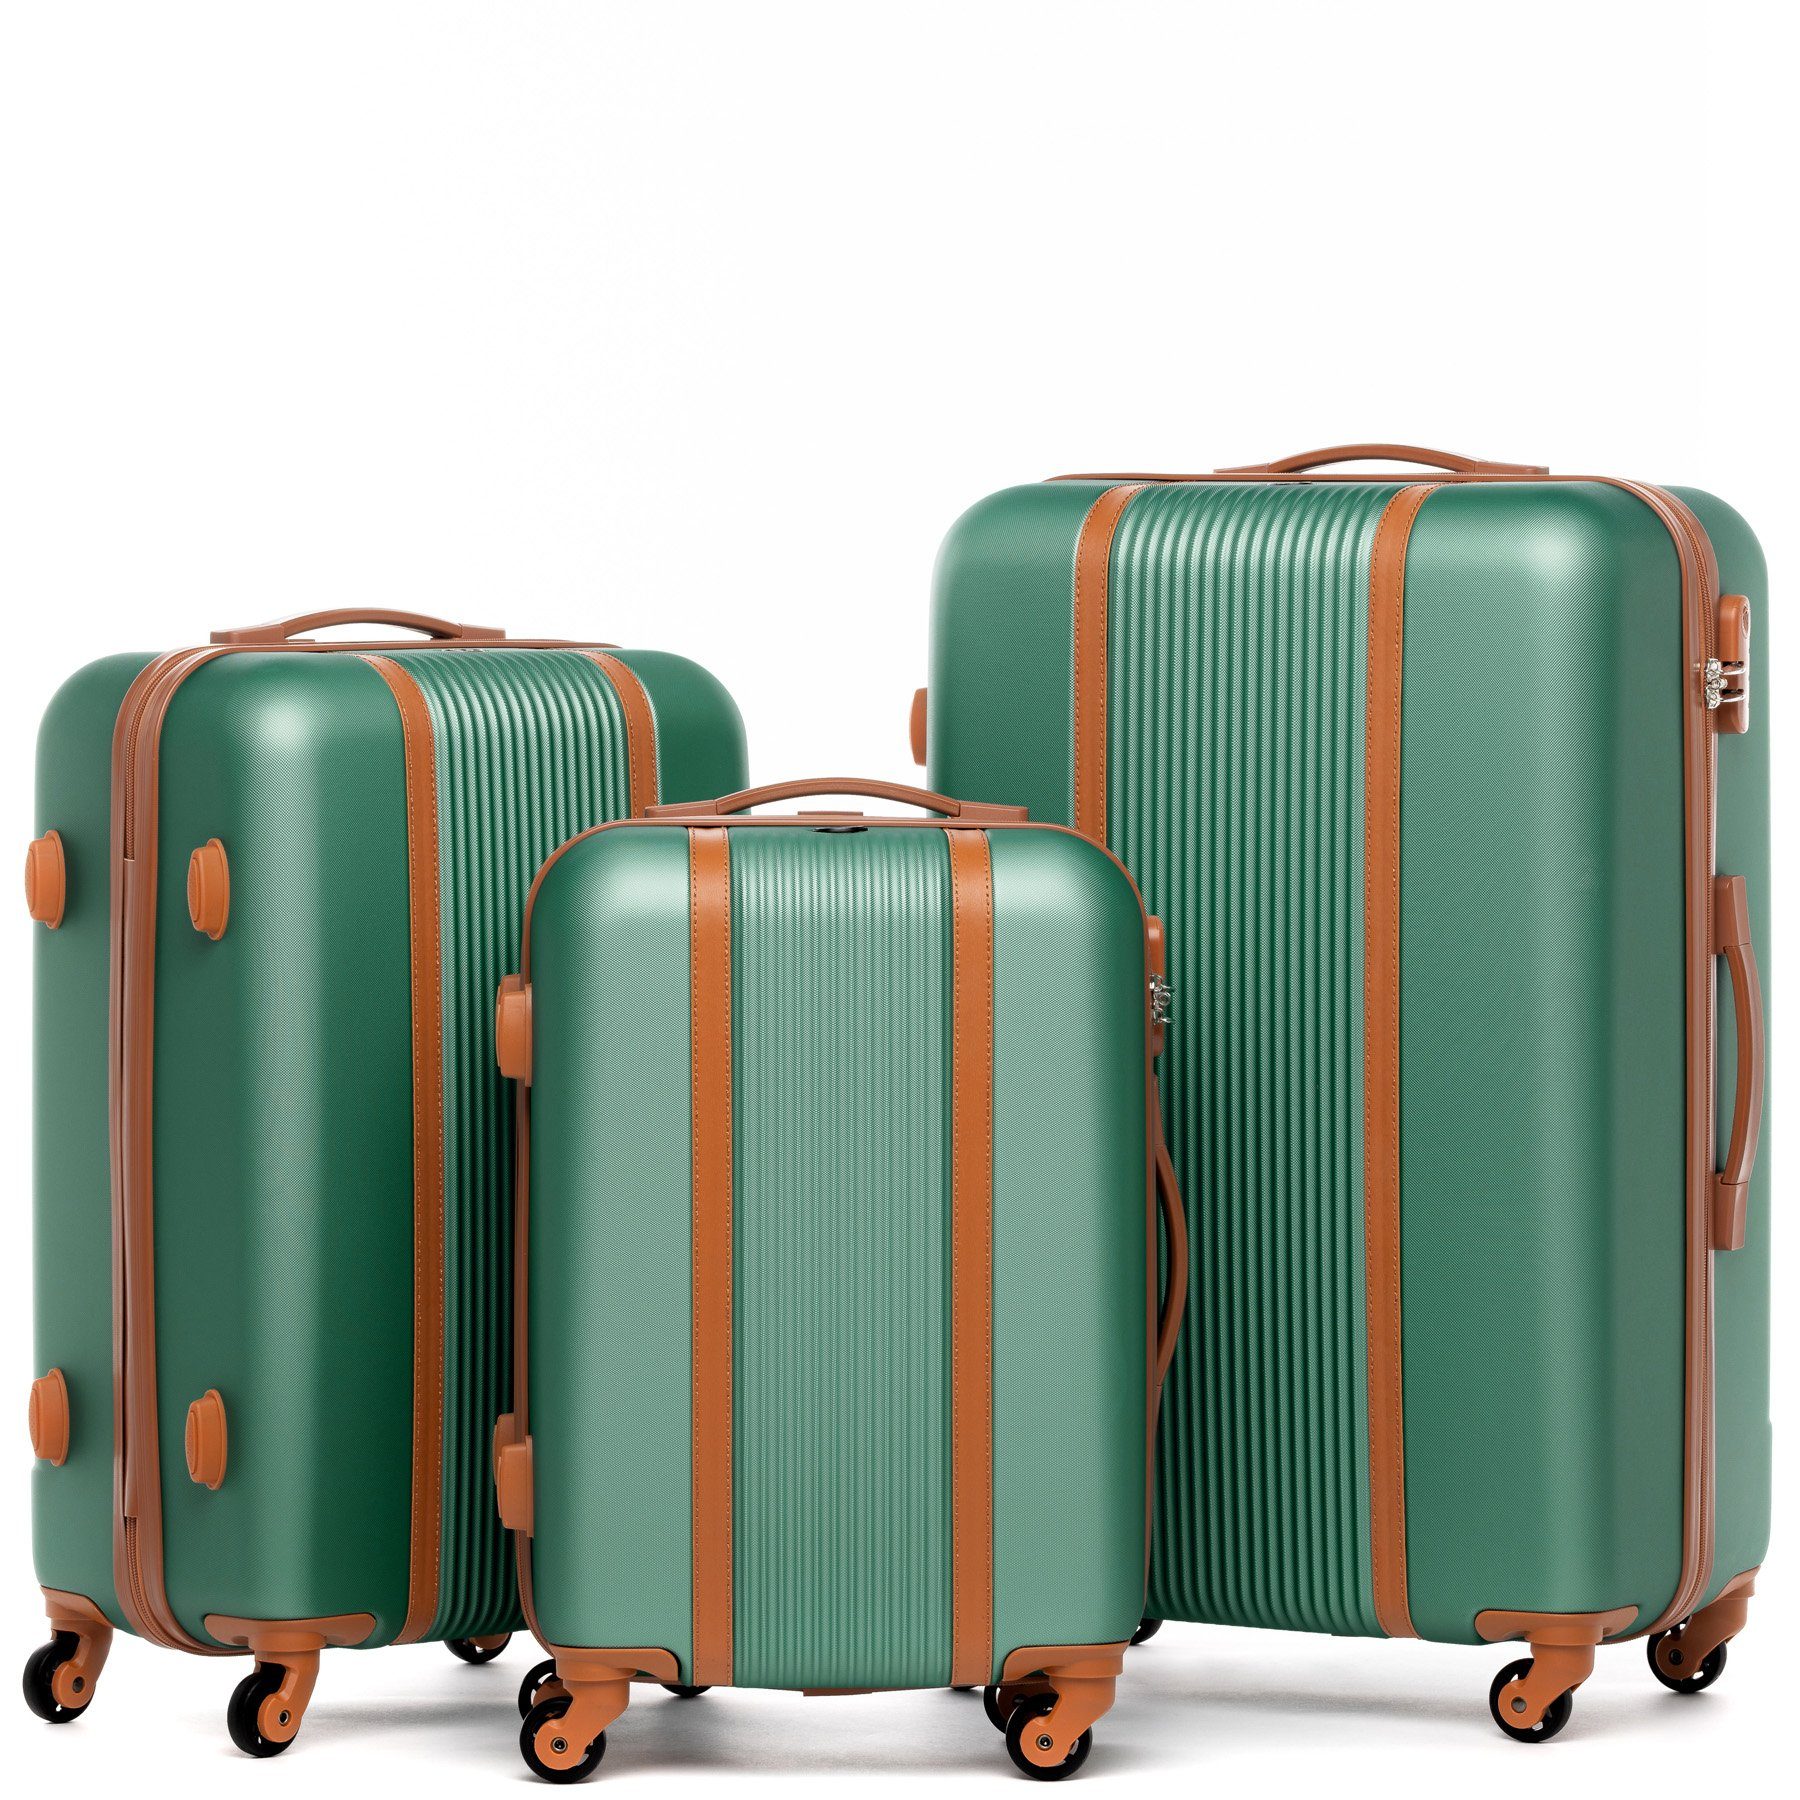 Reisekoffer Premium Rollkoffer Set, 4 salbei-grün Hartschale 3 Koffer Rollen, Milano, Kofferset Trolley 3er FERGÉ teilig